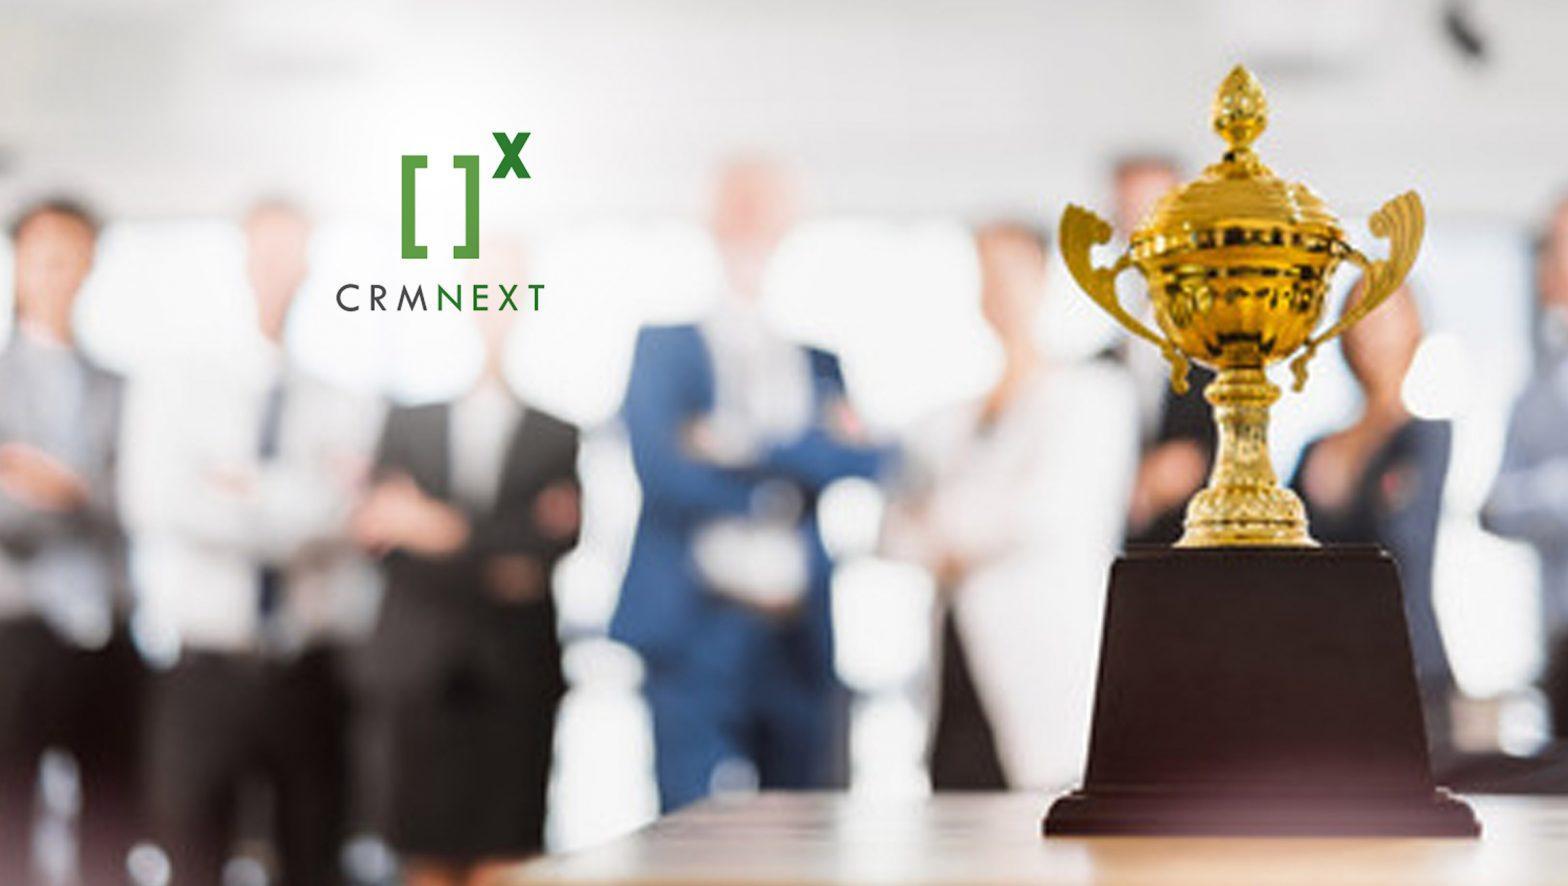 Axis Bank & CRMNEXT won IBSi Innovation Awards 2021